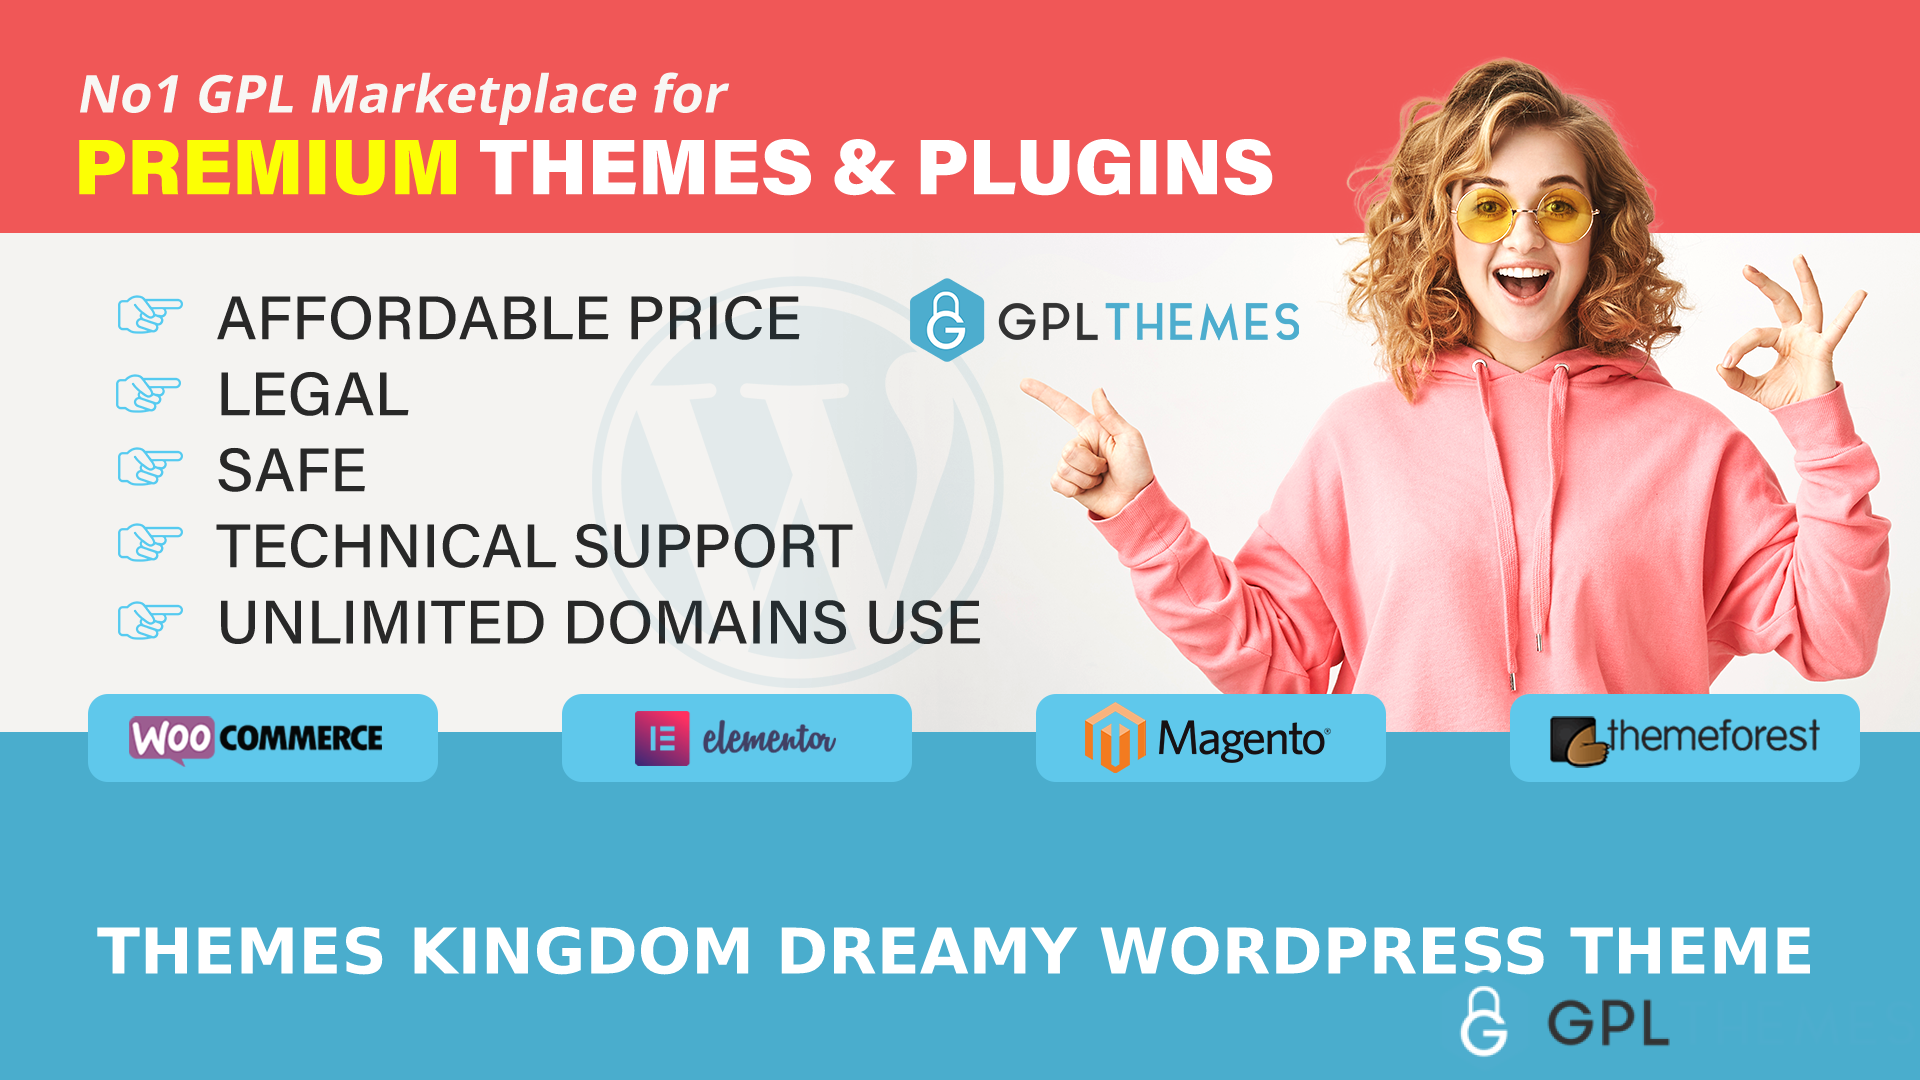 Themes Kingdom Dreamy WordPress Theme